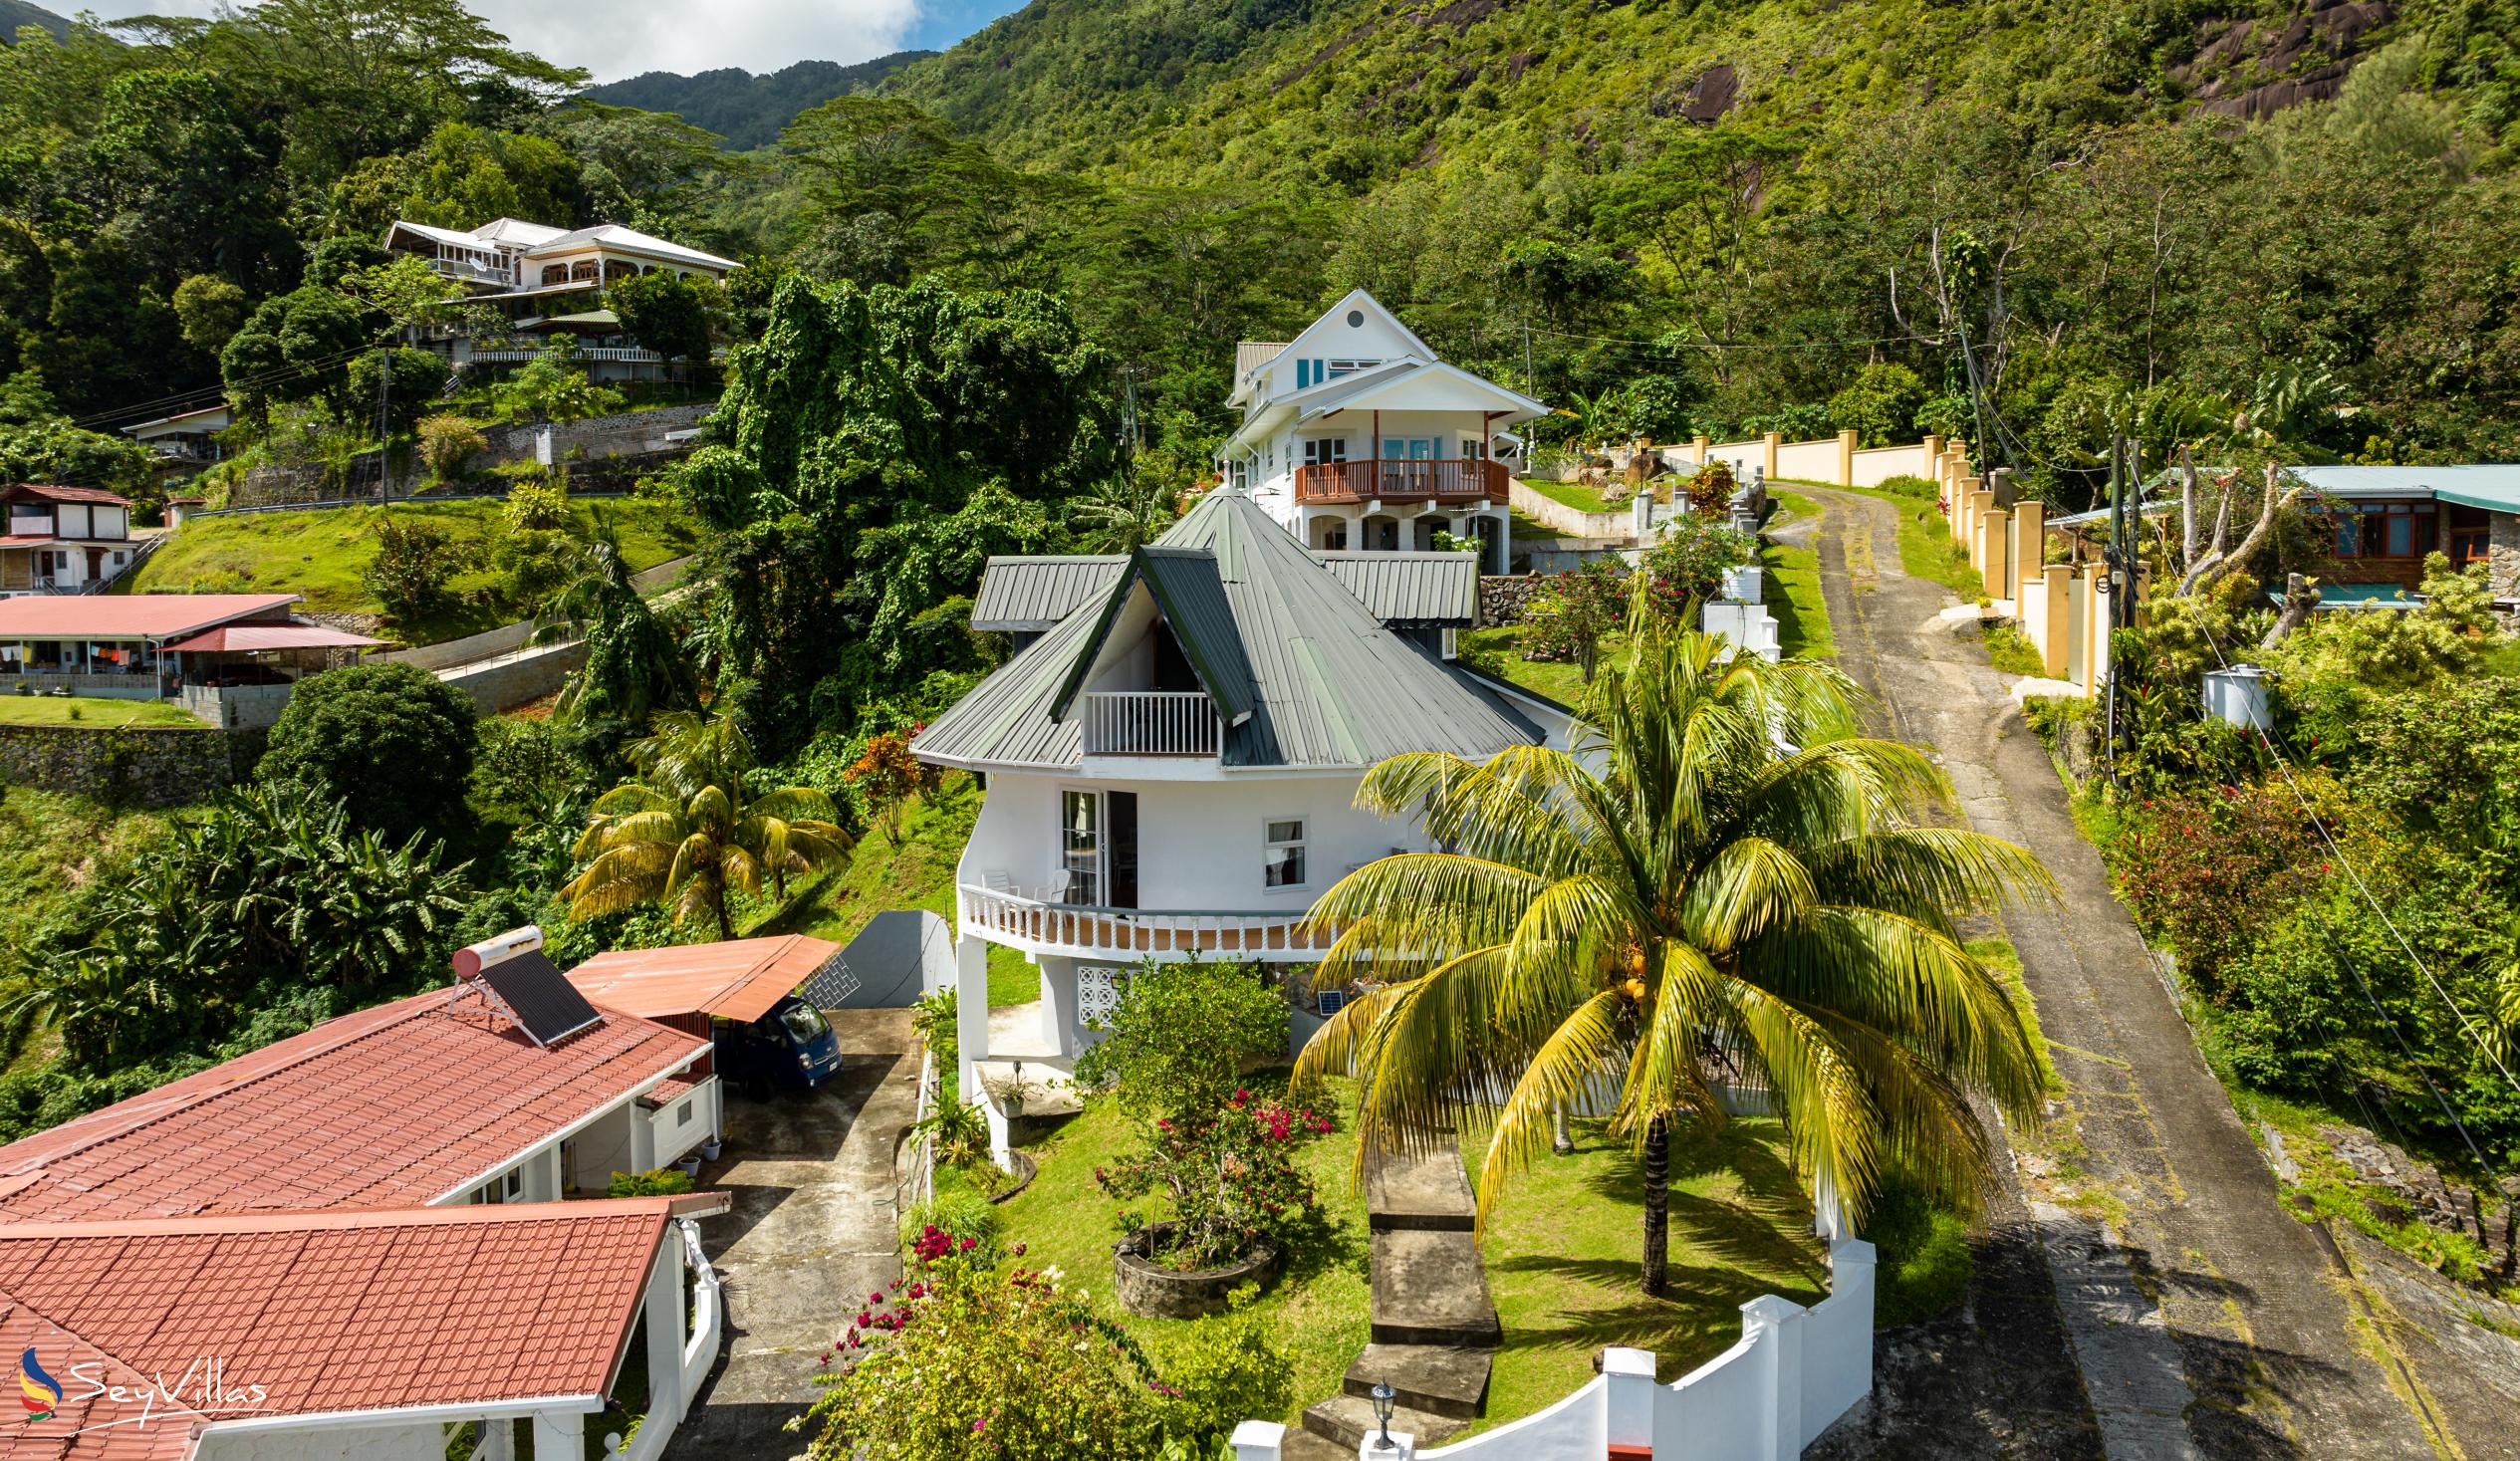 Photo 7: Casuarina Hill Villa - Outdoor area - Mahé (Seychelles)